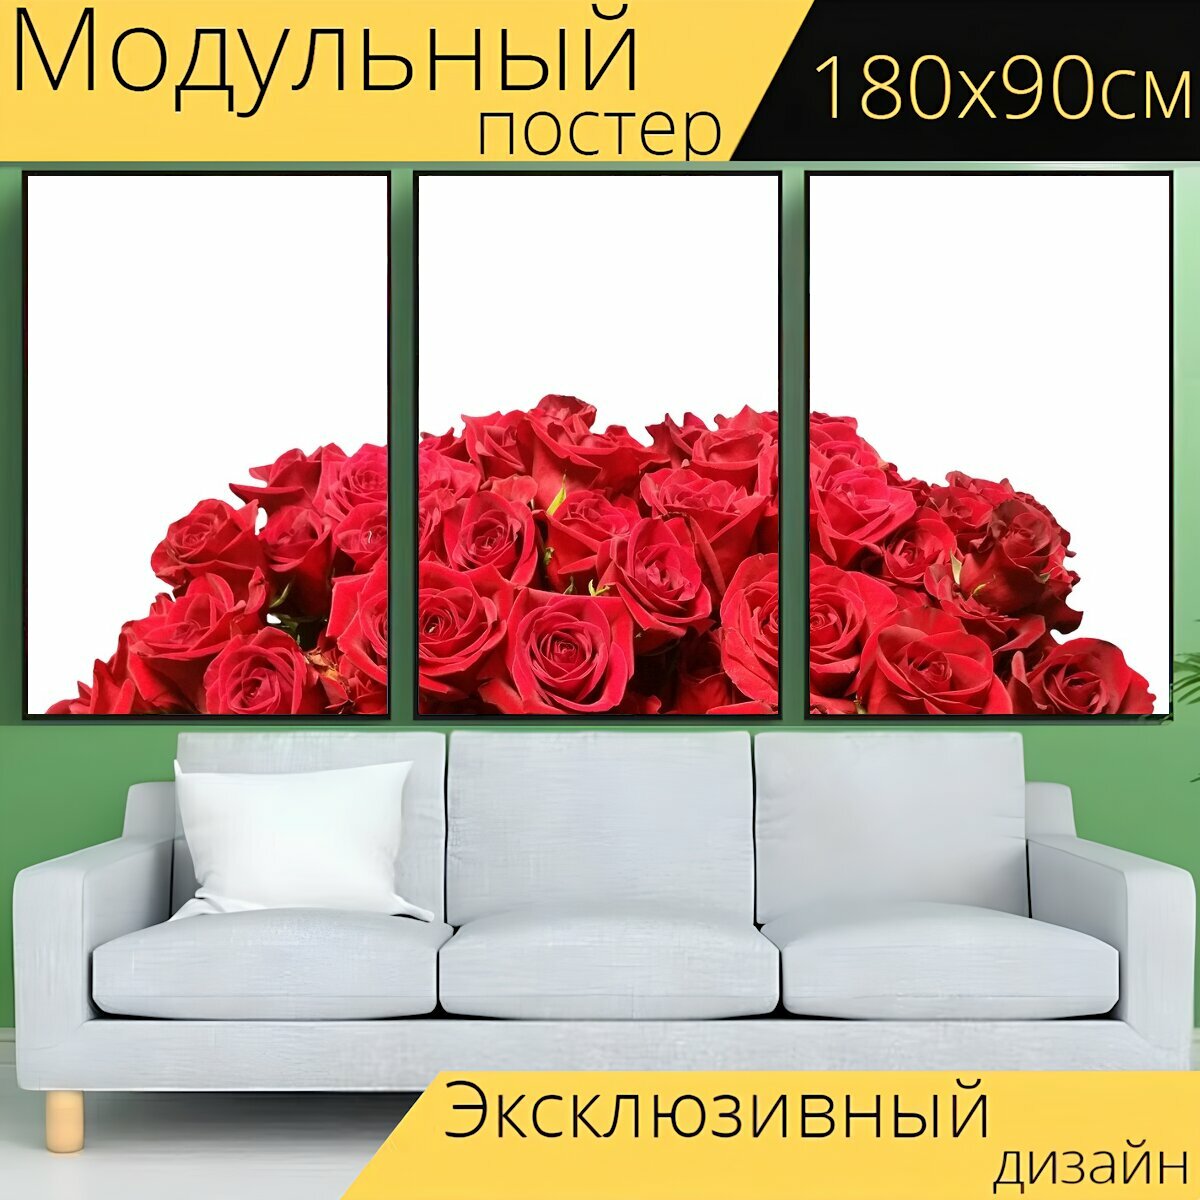 Модульный постер "Розы, красный, красные розы" 180 x 90 см. для интерьера